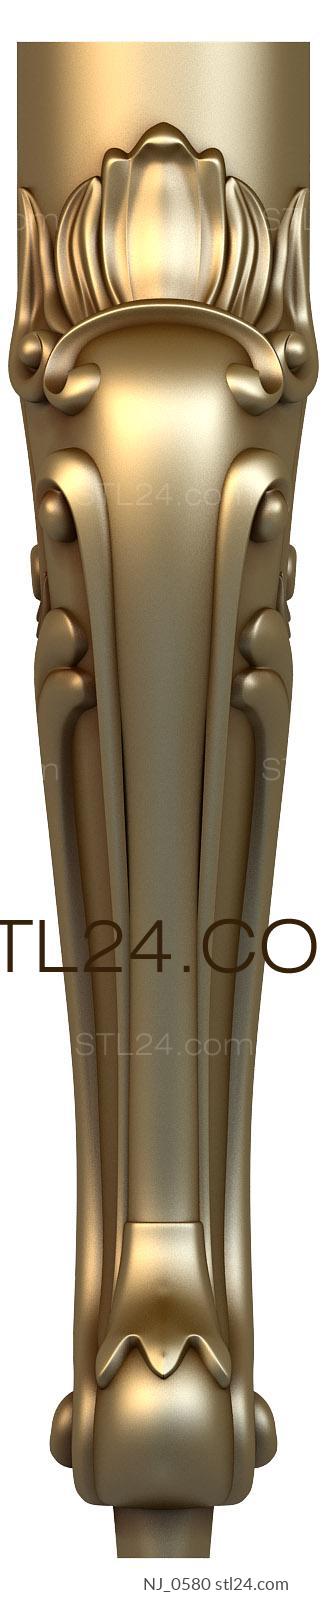 Ножки (NJ_0580) 3D модель для ЧПУ станка